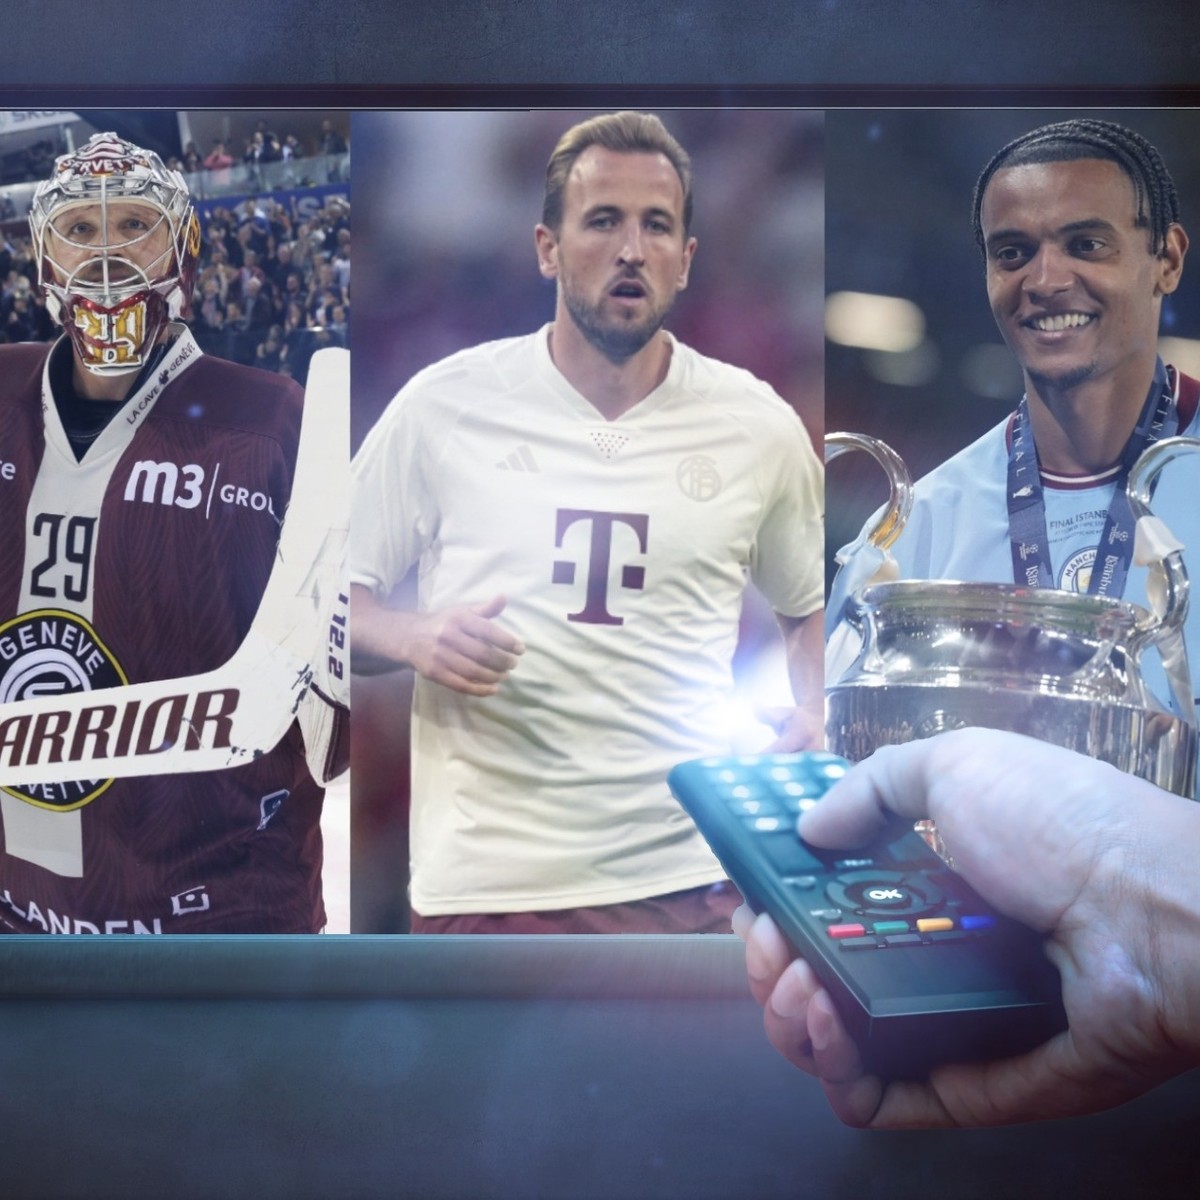 Live-Sport So kannst du Bundesliga, CL und Super League im TV streamen